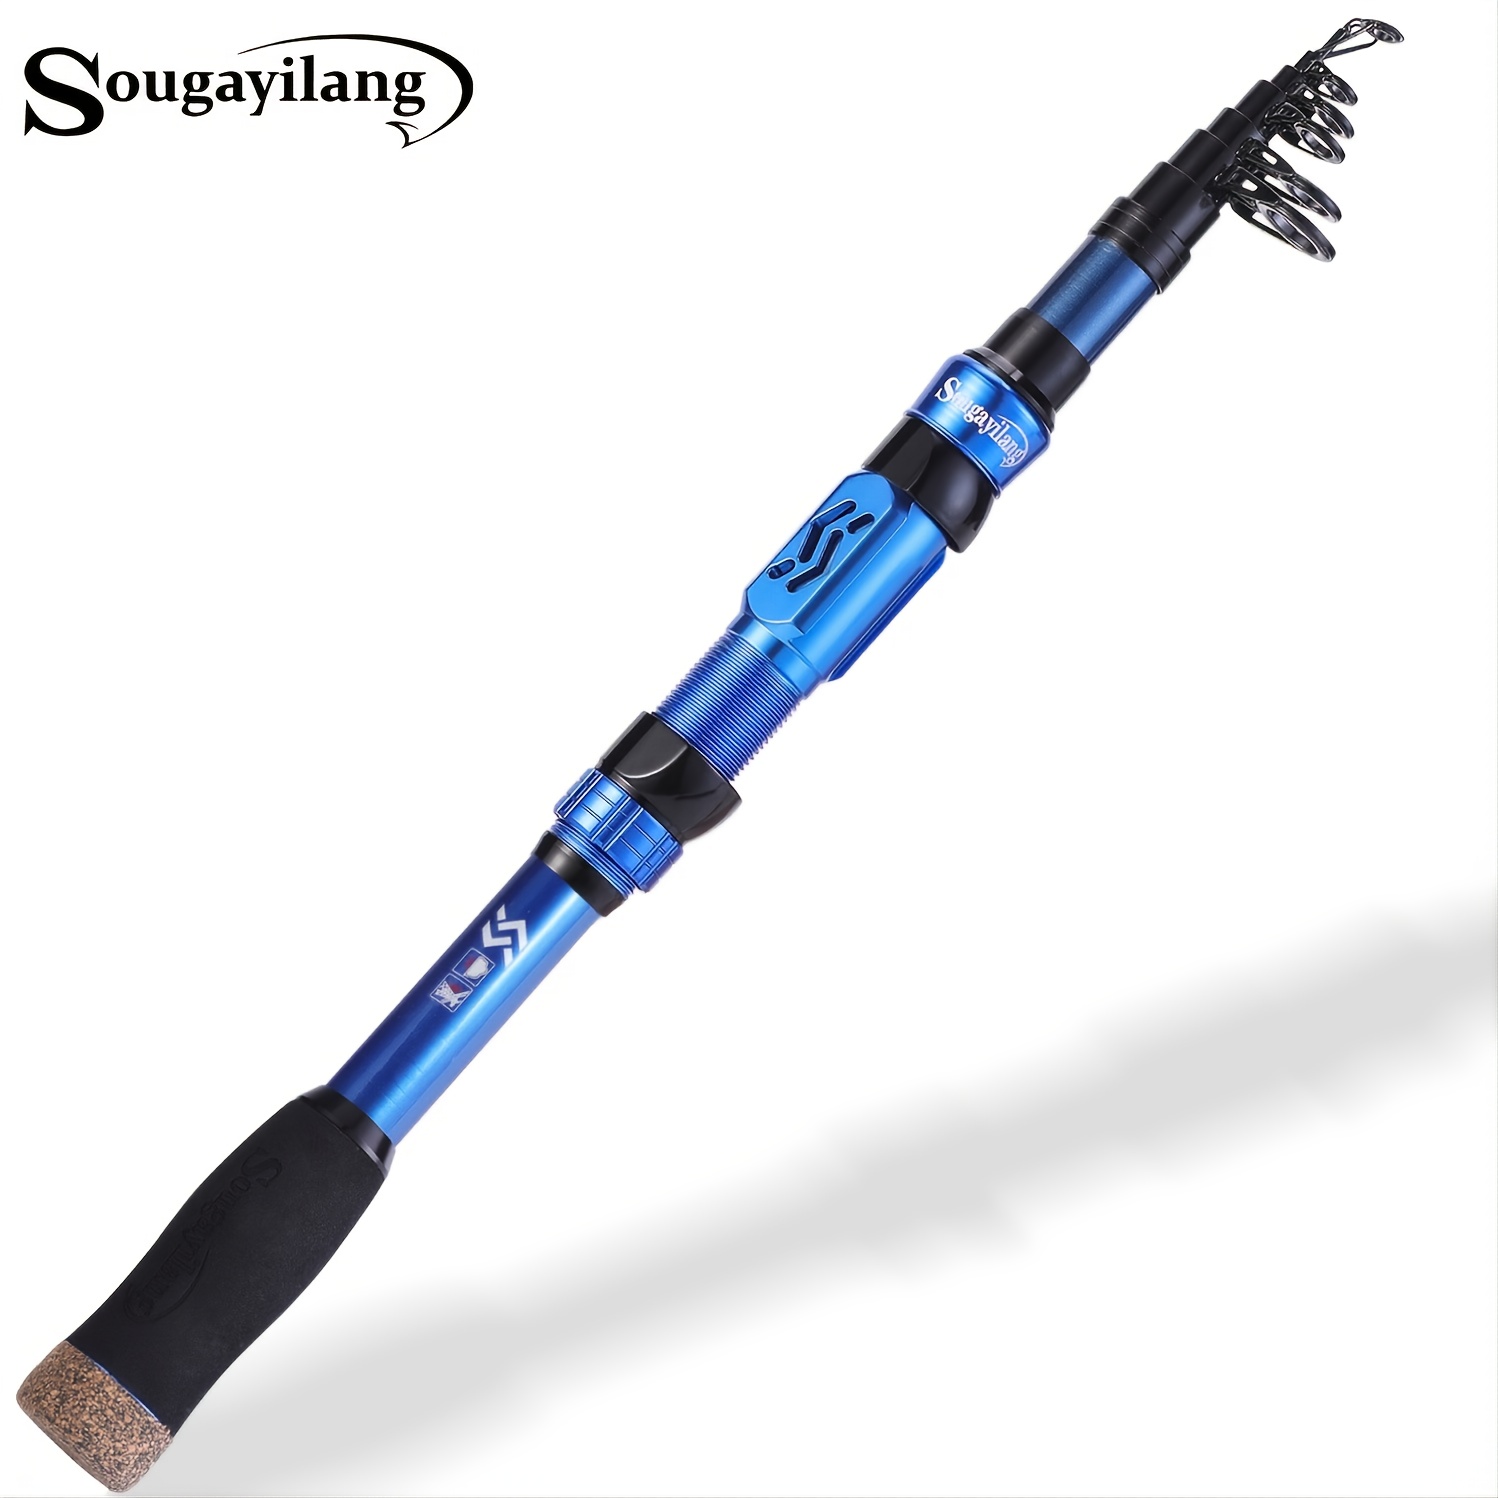 Sougayilang Blue Telescopic Fishing Rod: Portable Eva Handle